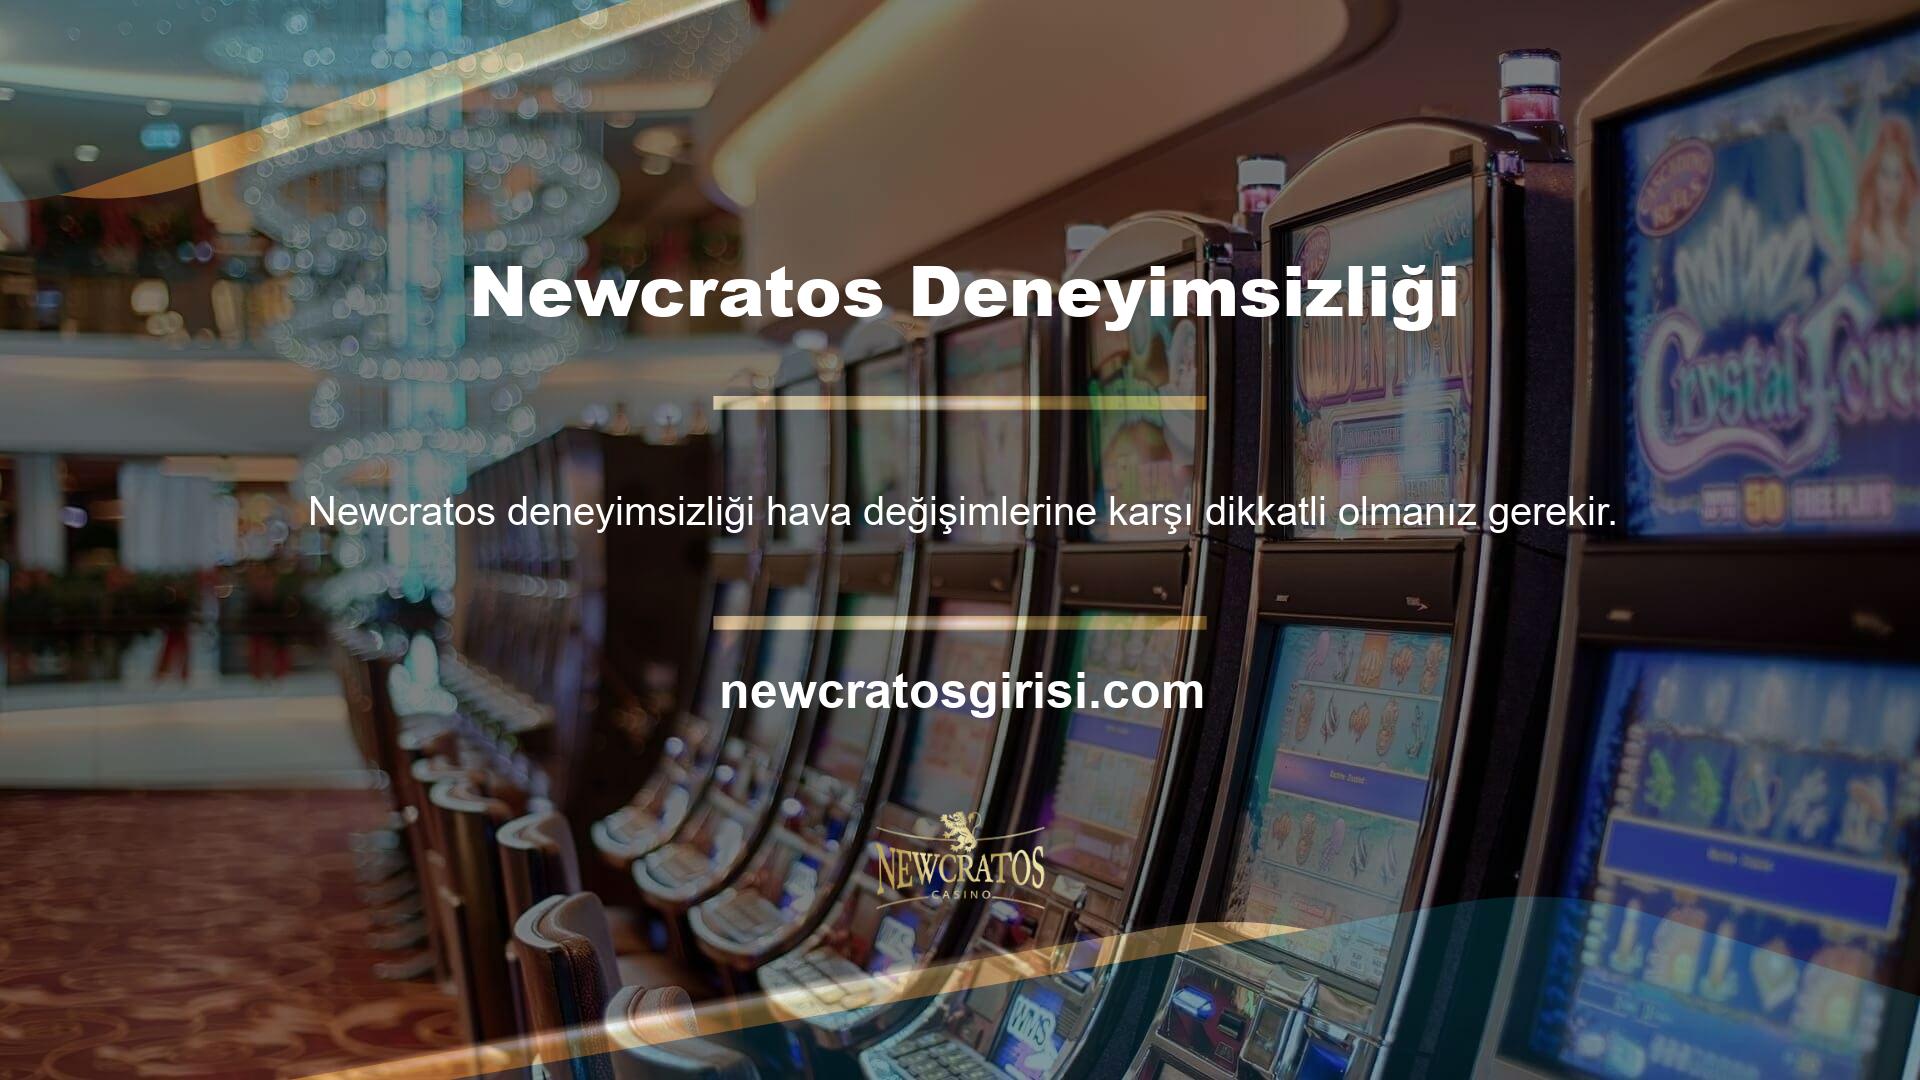 Siteye ilk kez üye iseniz, Newcratos deneyimsizliğinizi telafi etmek için bonuslar sunuyor